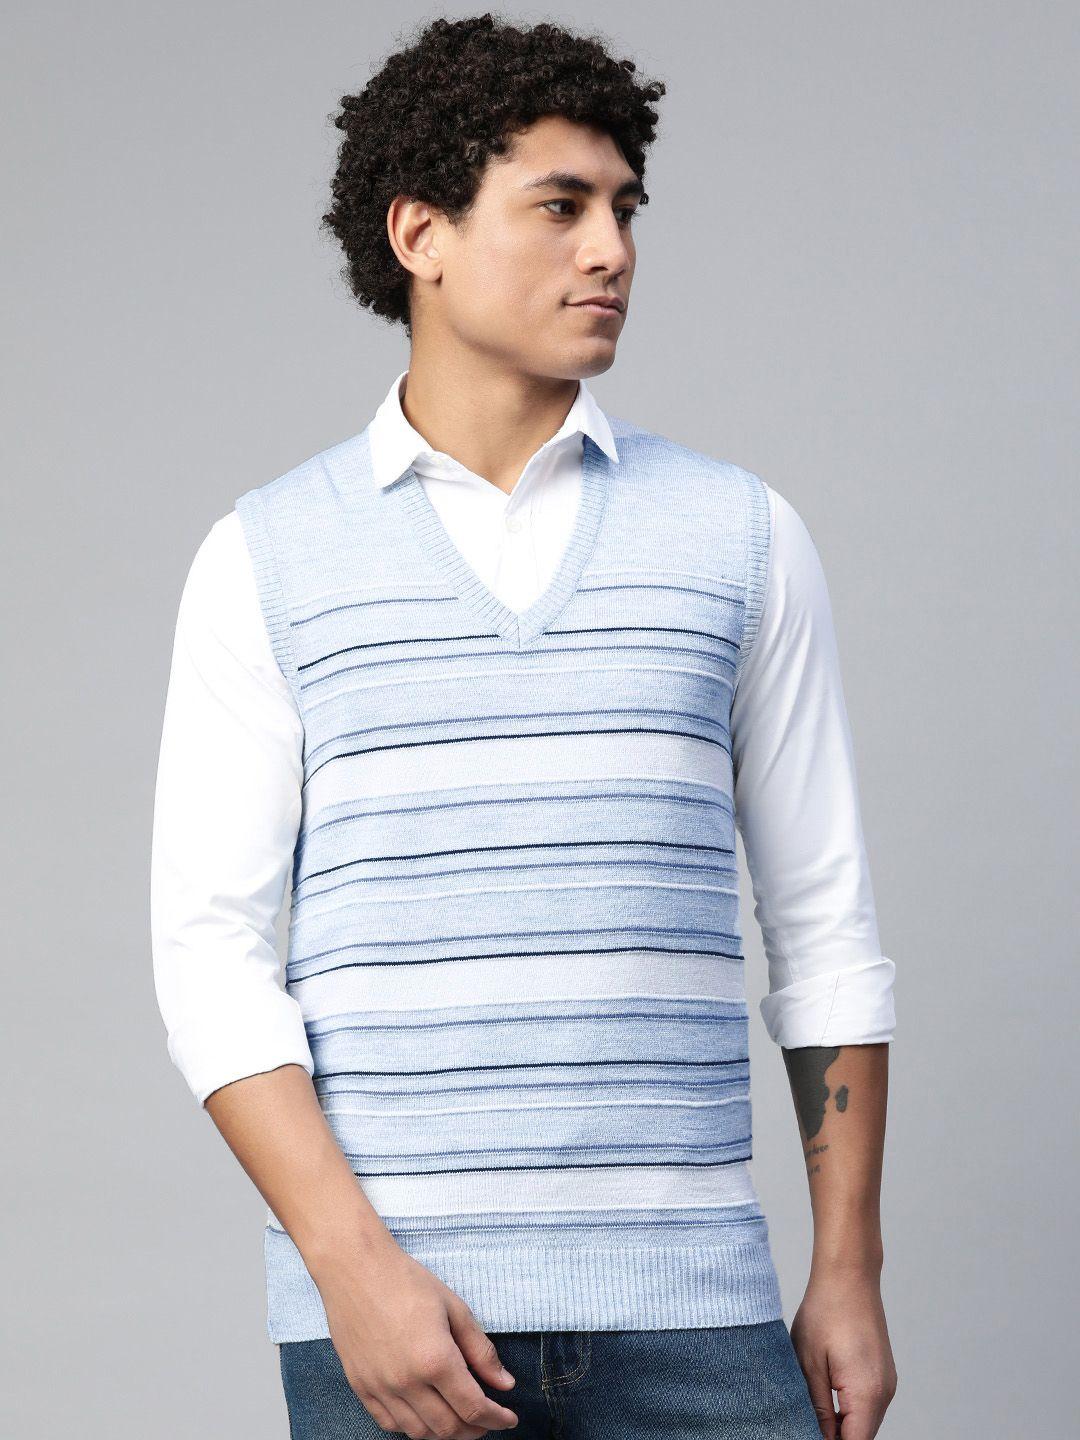 pierre-carlo-white-&-blue-striped-sweater-vest